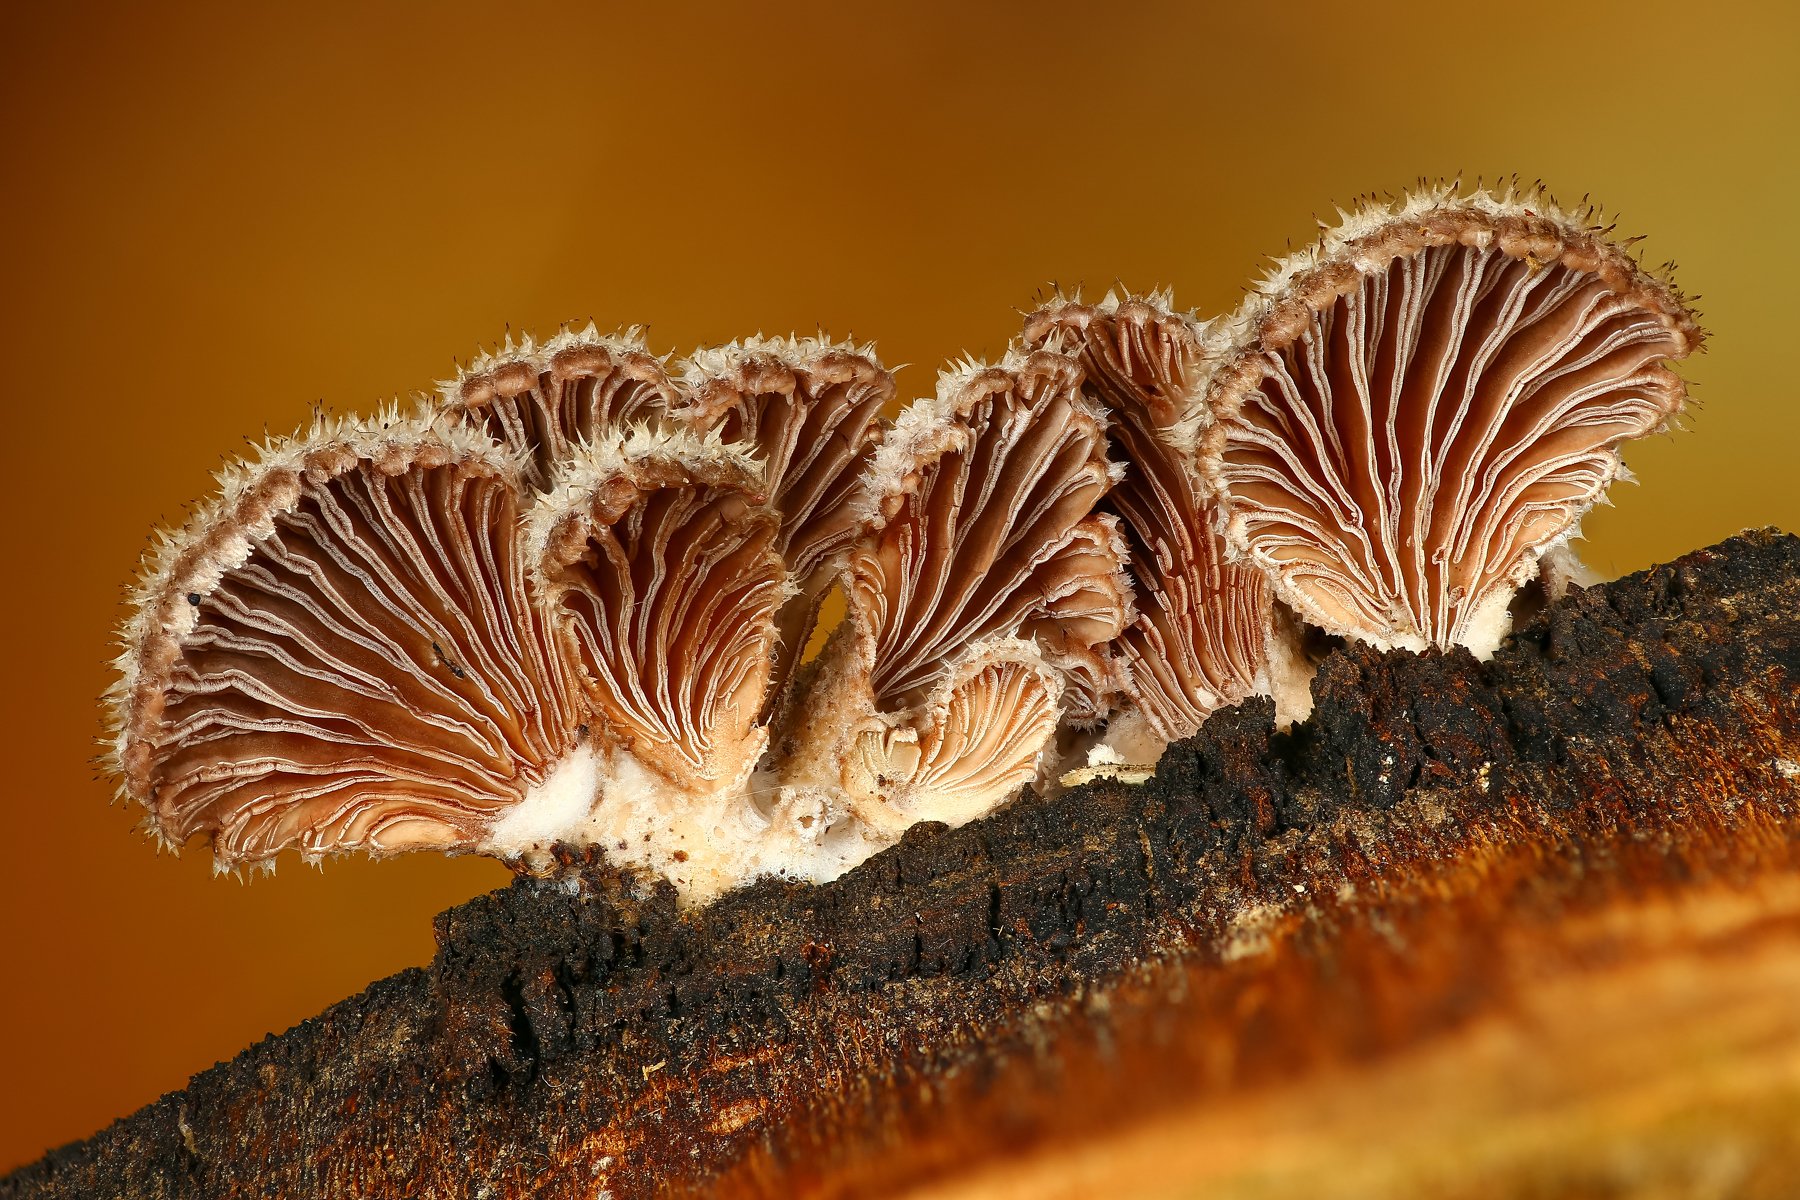 грибы,макро,природа,цвет,оранжевый, Андрей Шаповалов